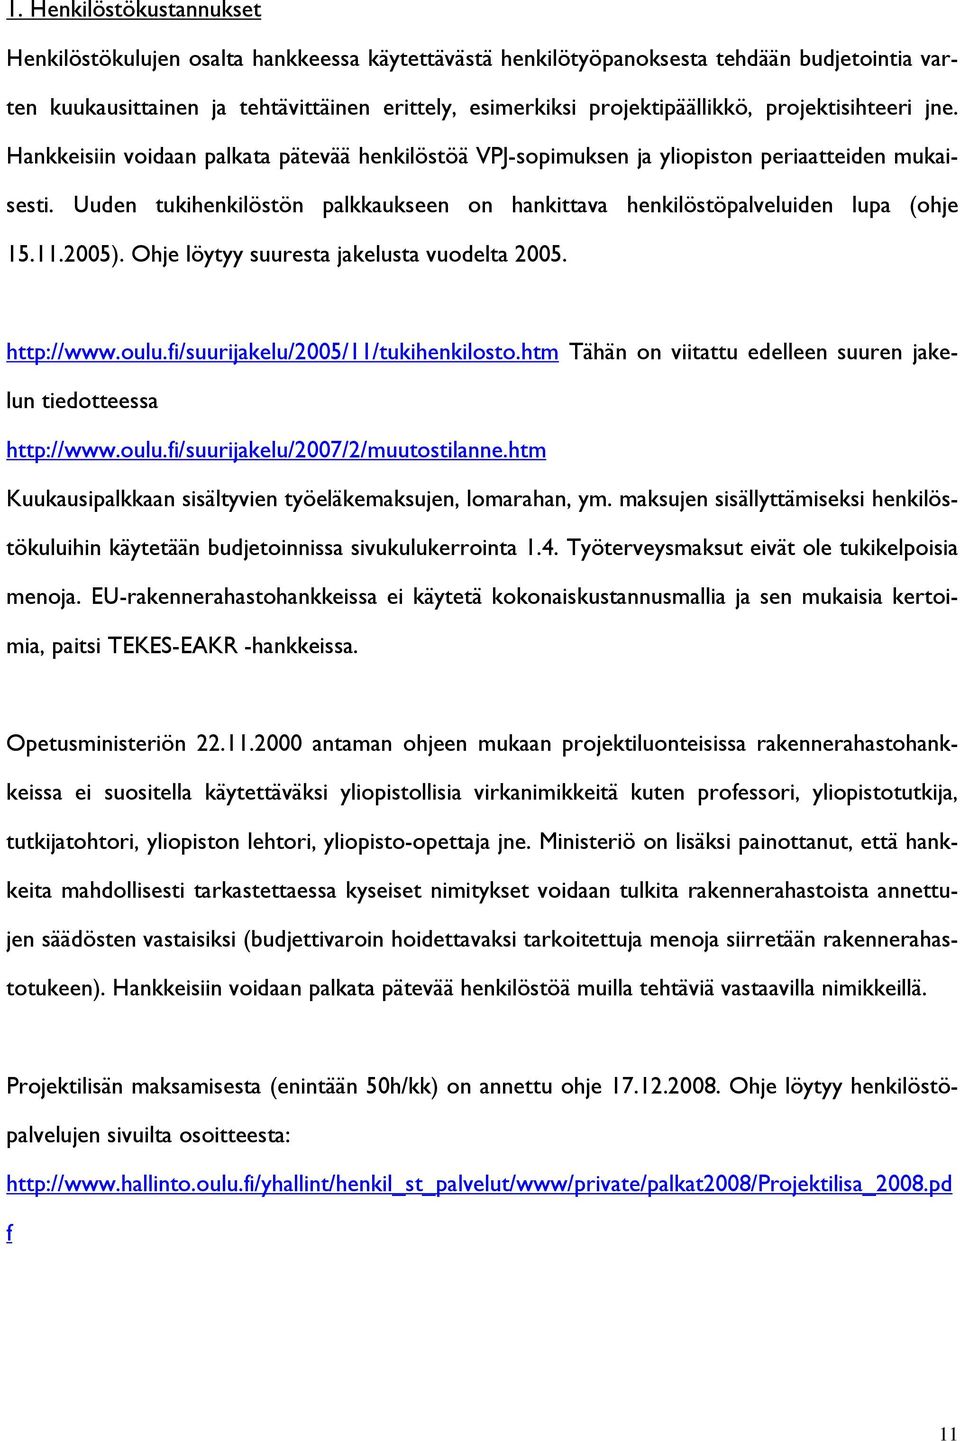 Uuden tukihenkilöstön palkkaukseen on hankittava henkilöstöpalveluiden lupa (ohje 15.11.2005). Ohje löytyy suuresta jakelusta vuodelta 2005. http://www.oulu.fi/suurijakelu/2005/11/tukihenkilosto.